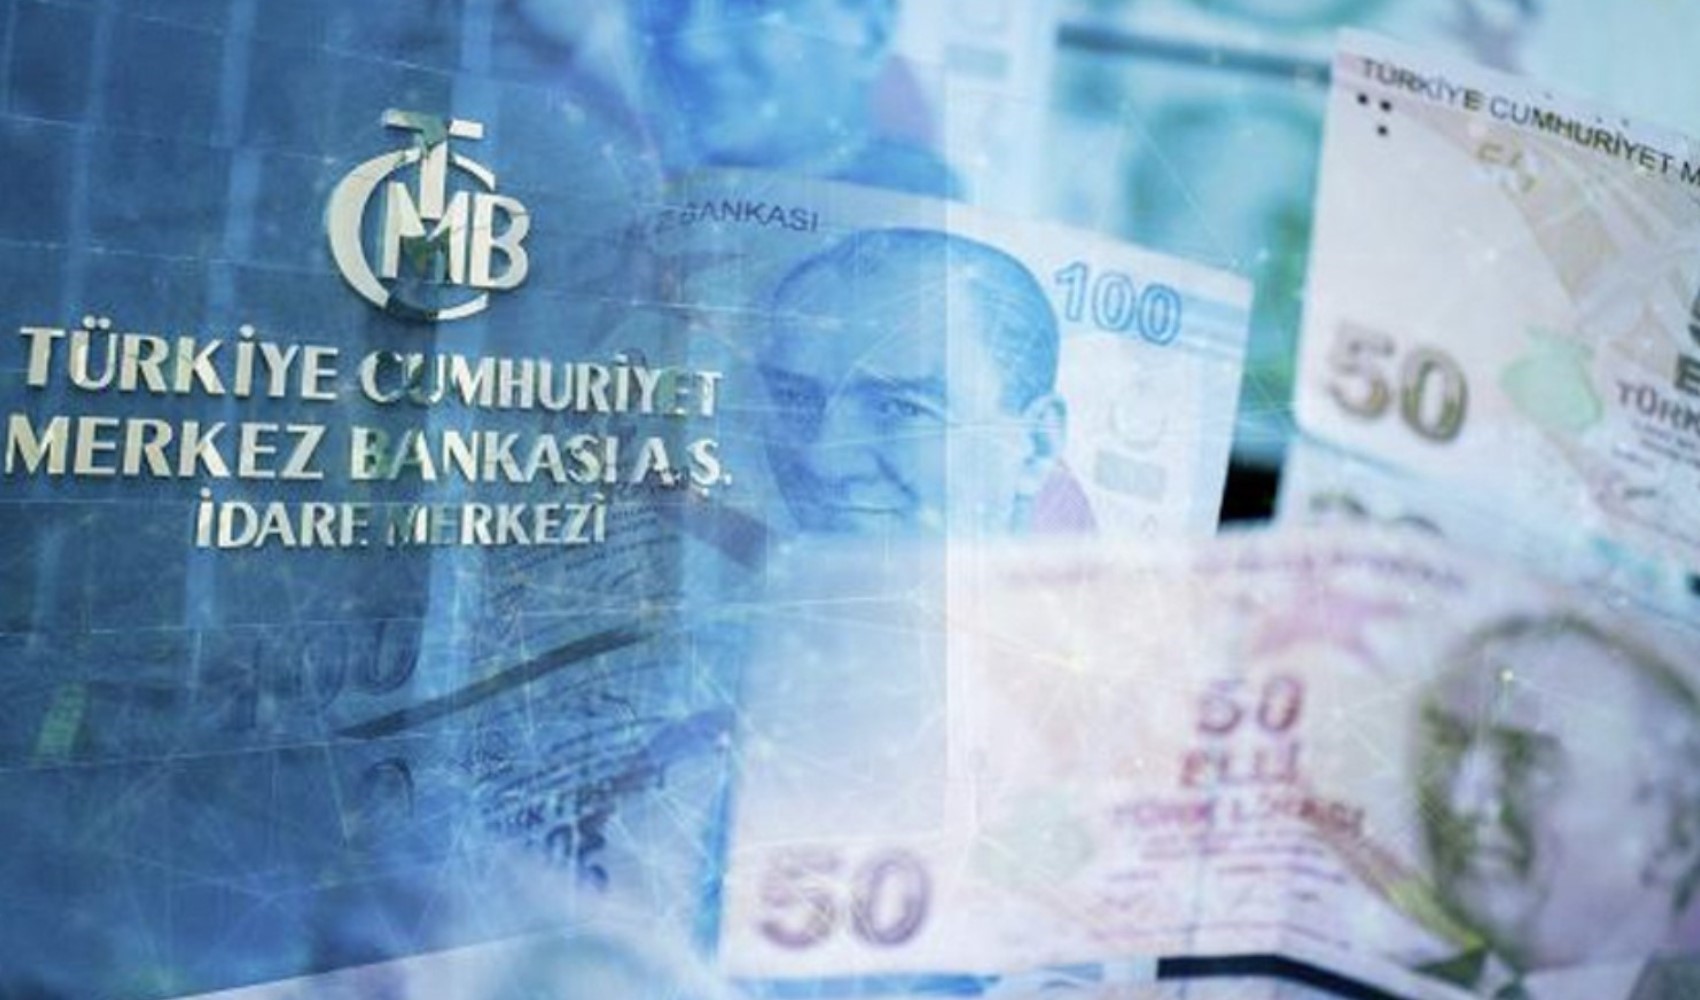 Maliye Bakanlığı açıkladı: Bütçe açığı artmaya devam ediyor!